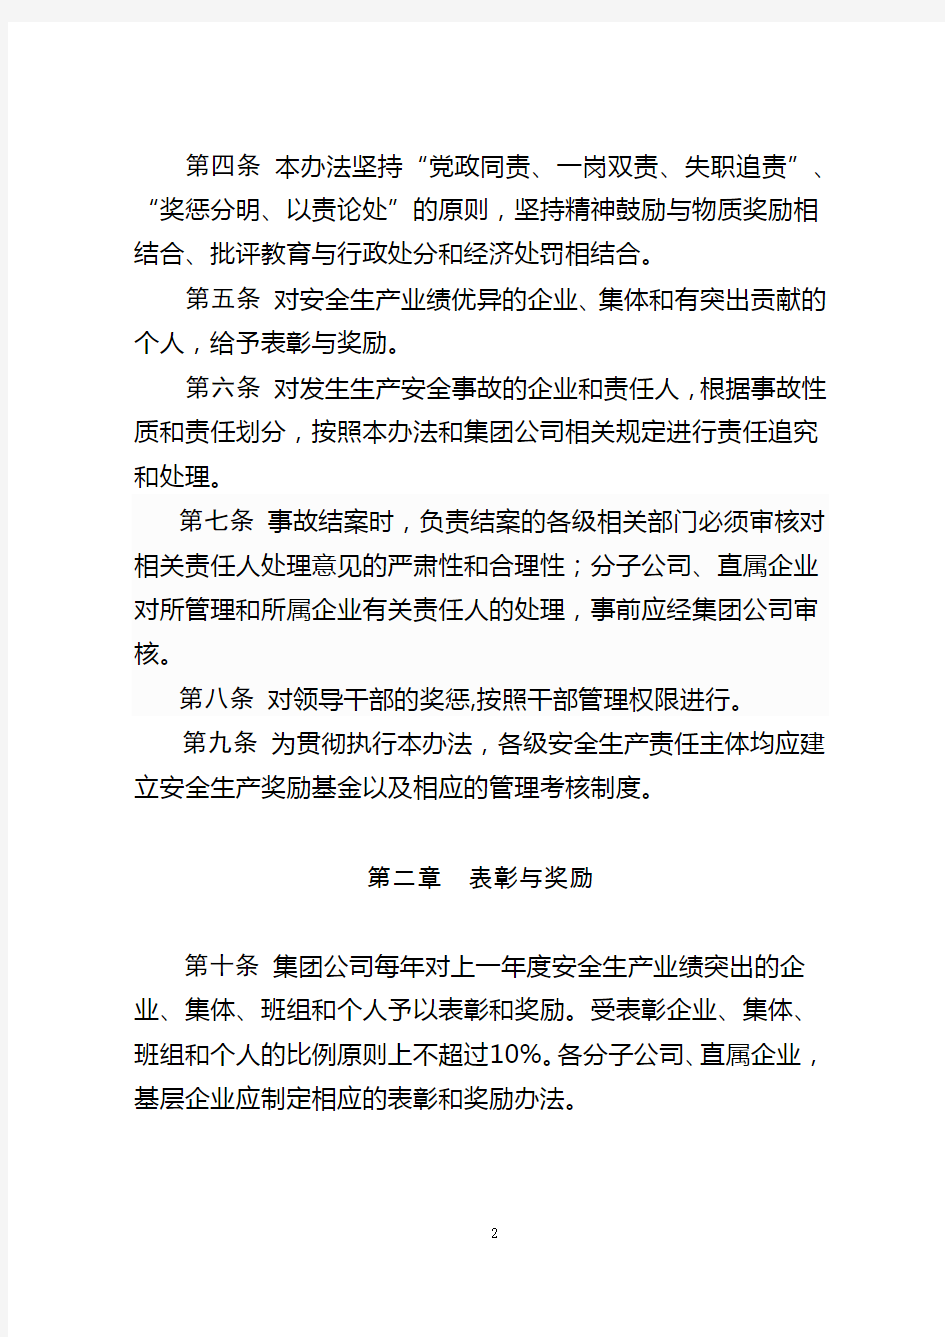 中国大唐集团公司安全生产工作奖惩办法